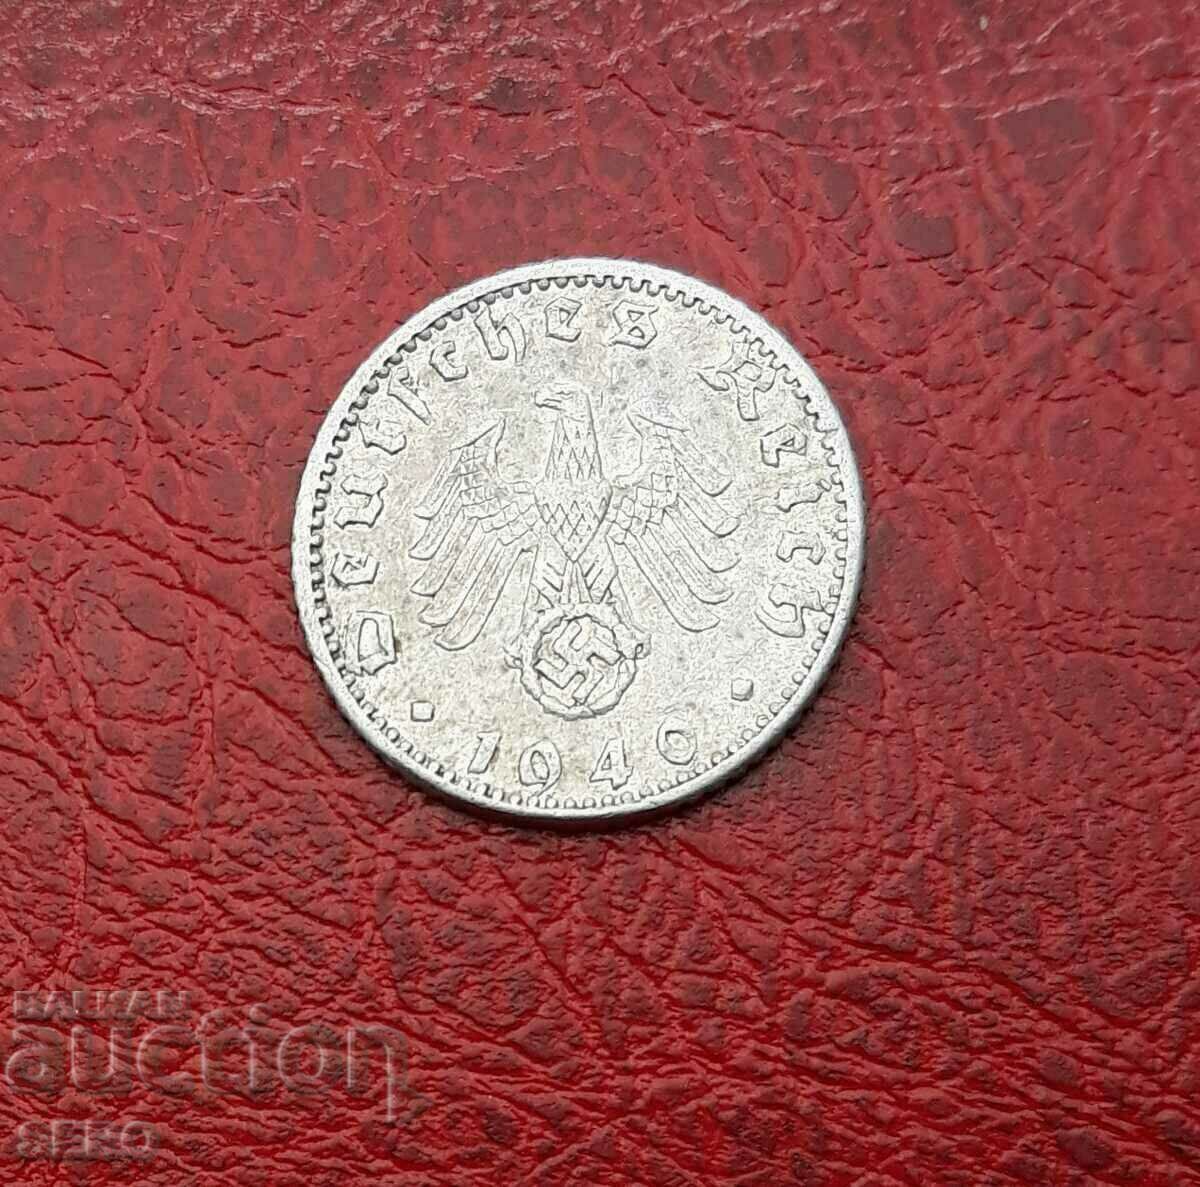 Germania-50 Pfennig 1940 A-Berlin